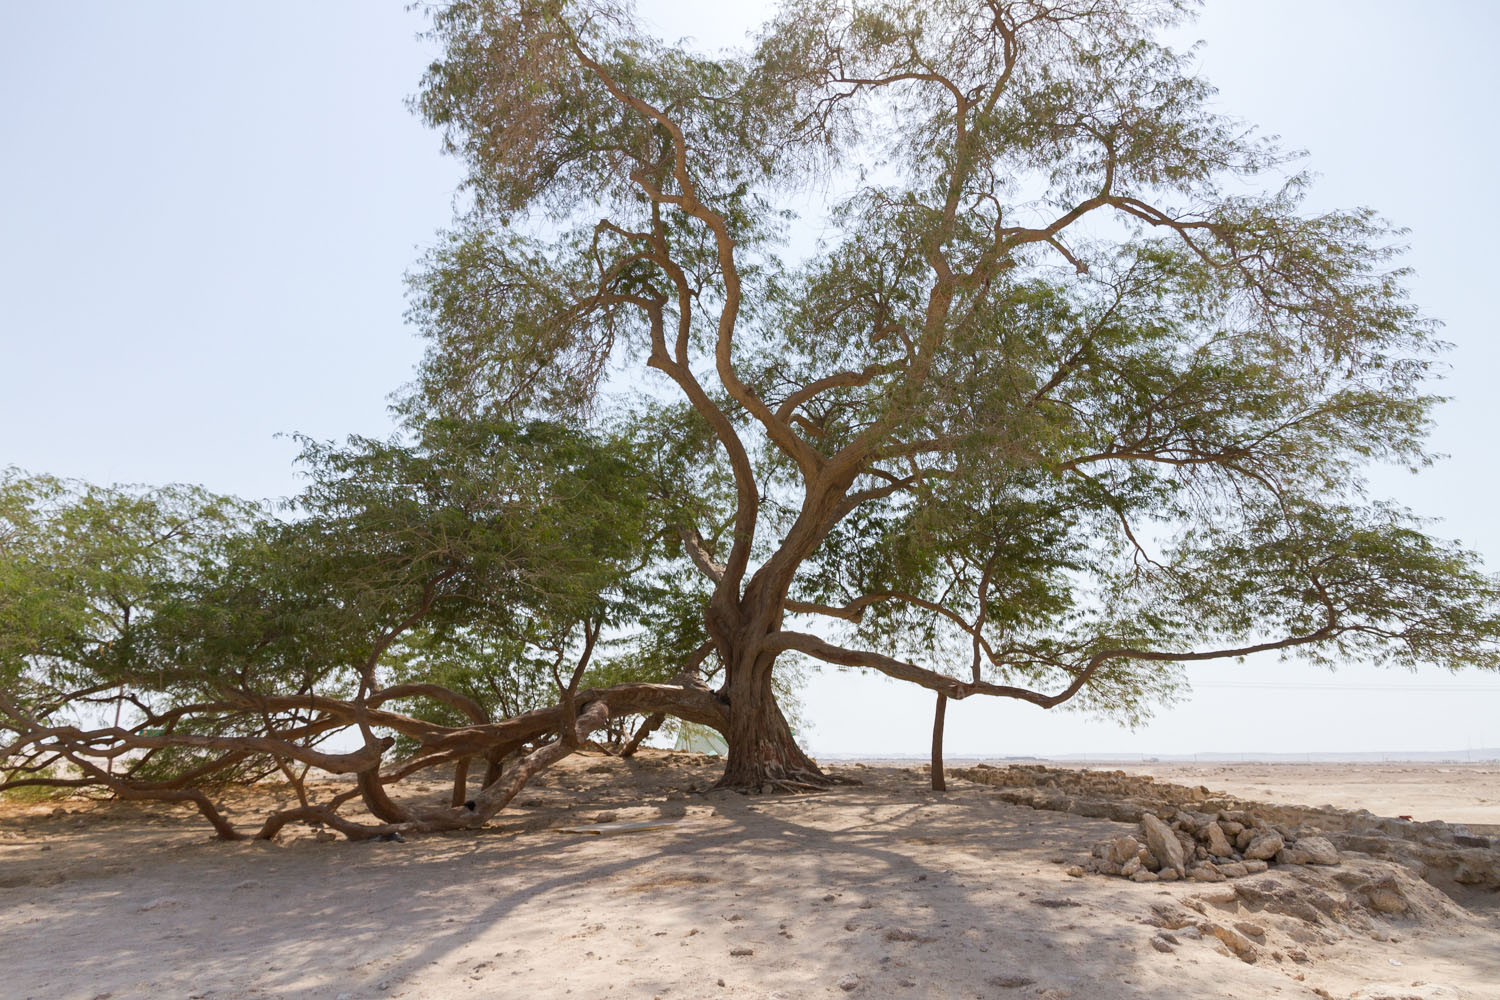 Christian-Schaffer-Bahrain-Desert-Tree-of-Life.jpg